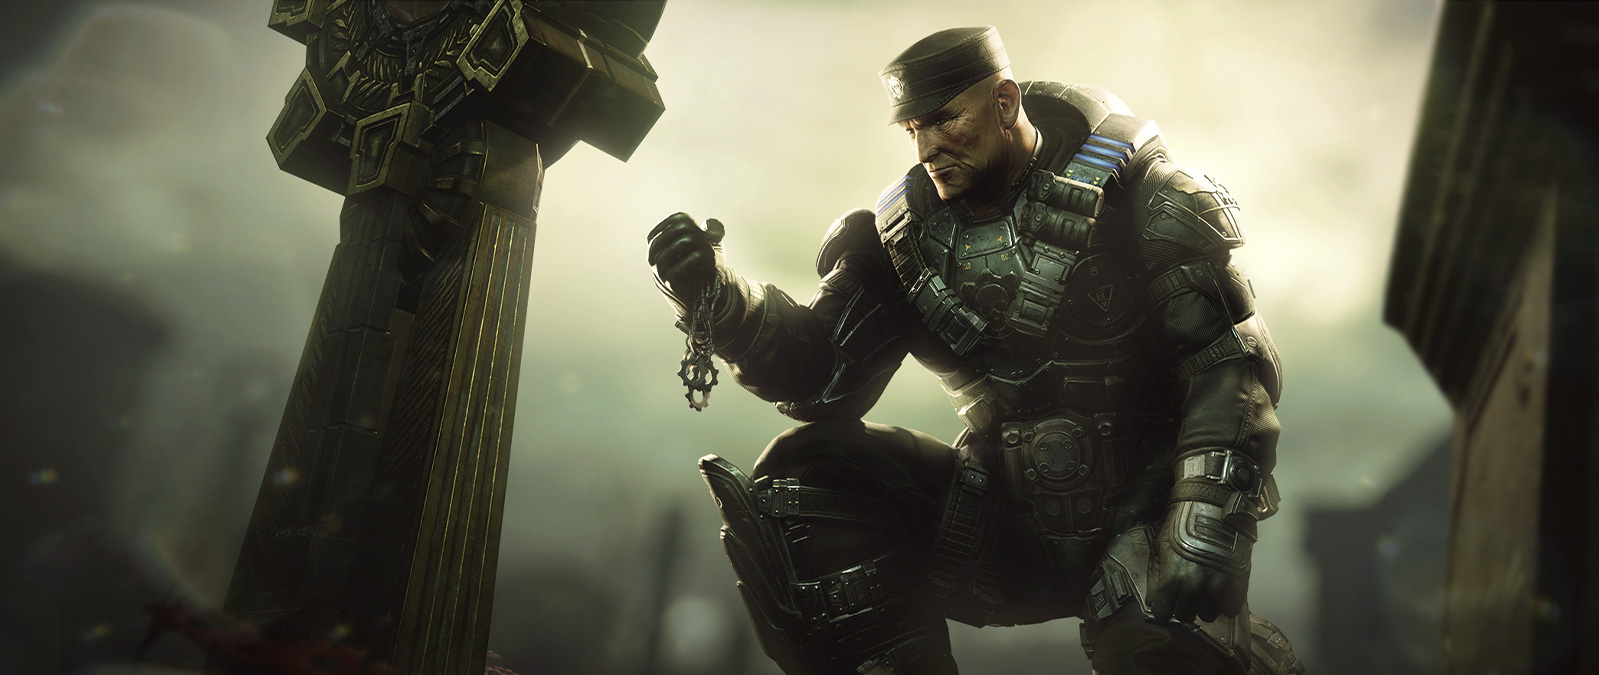 Персонаж из игры Gears 5 встает на колени, держа ожерелье.